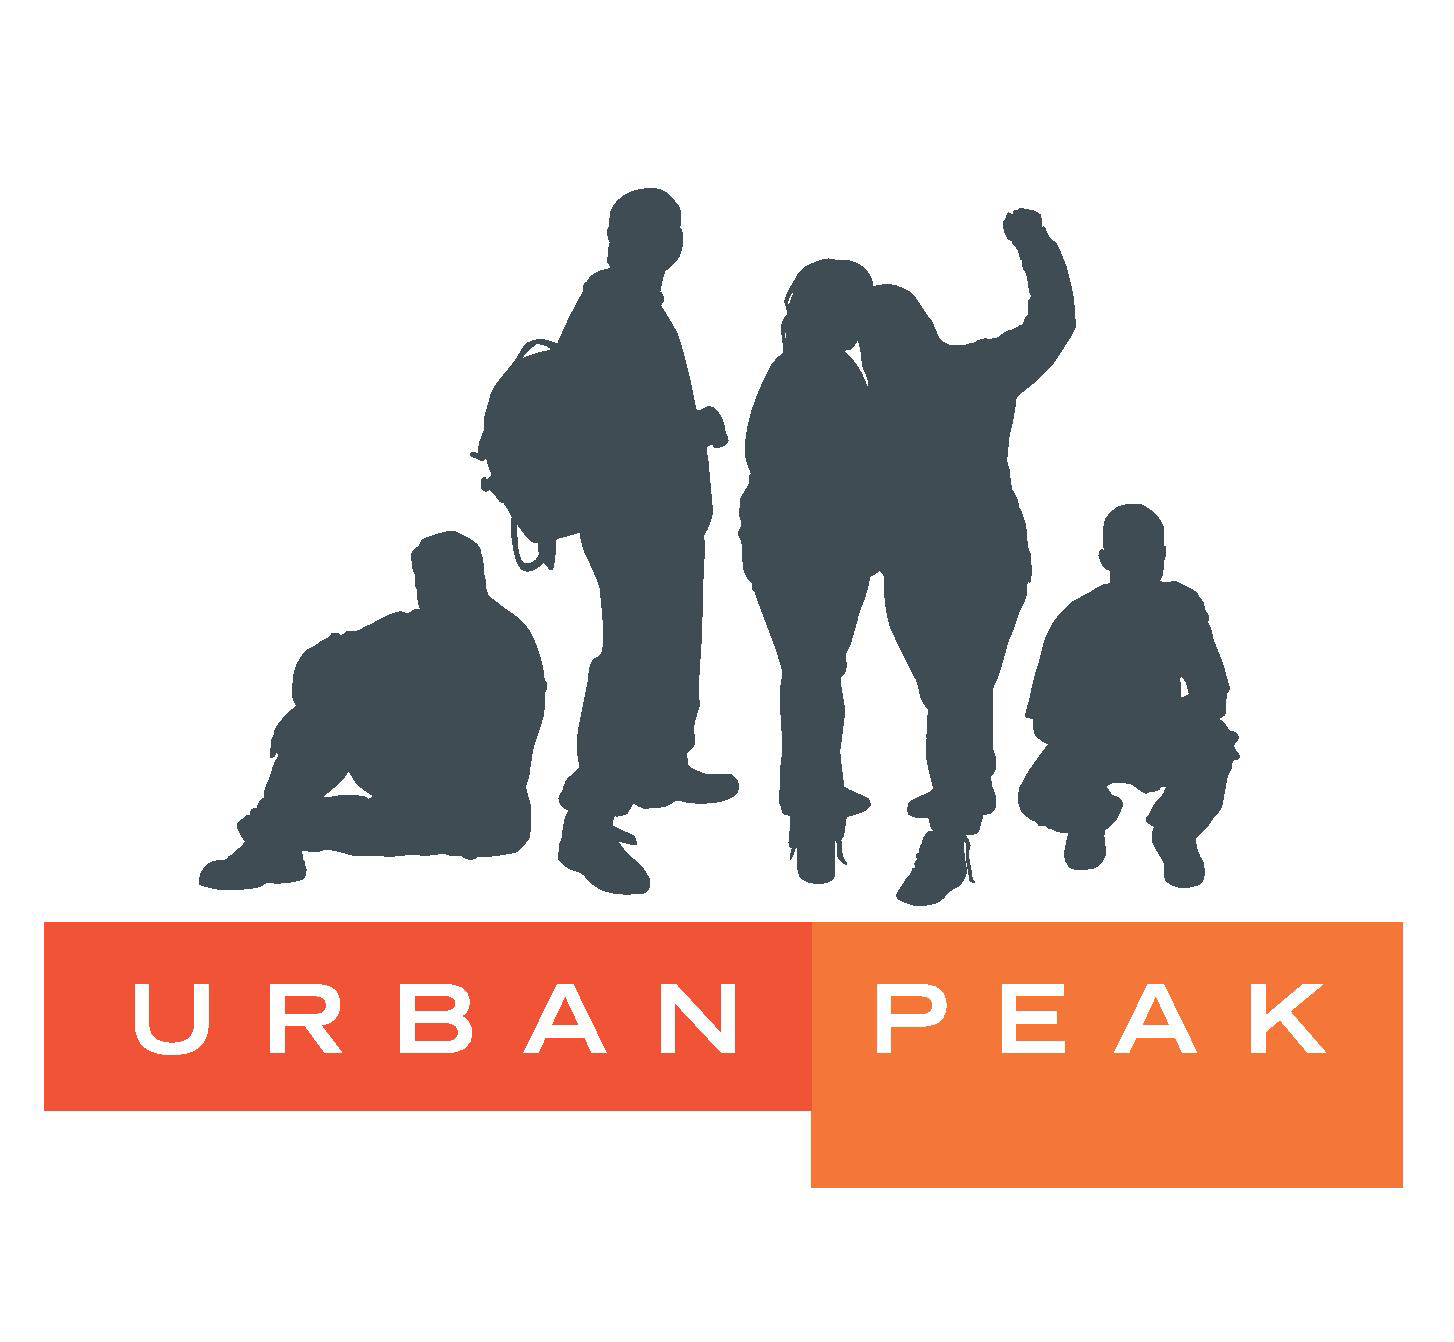 Urban peak